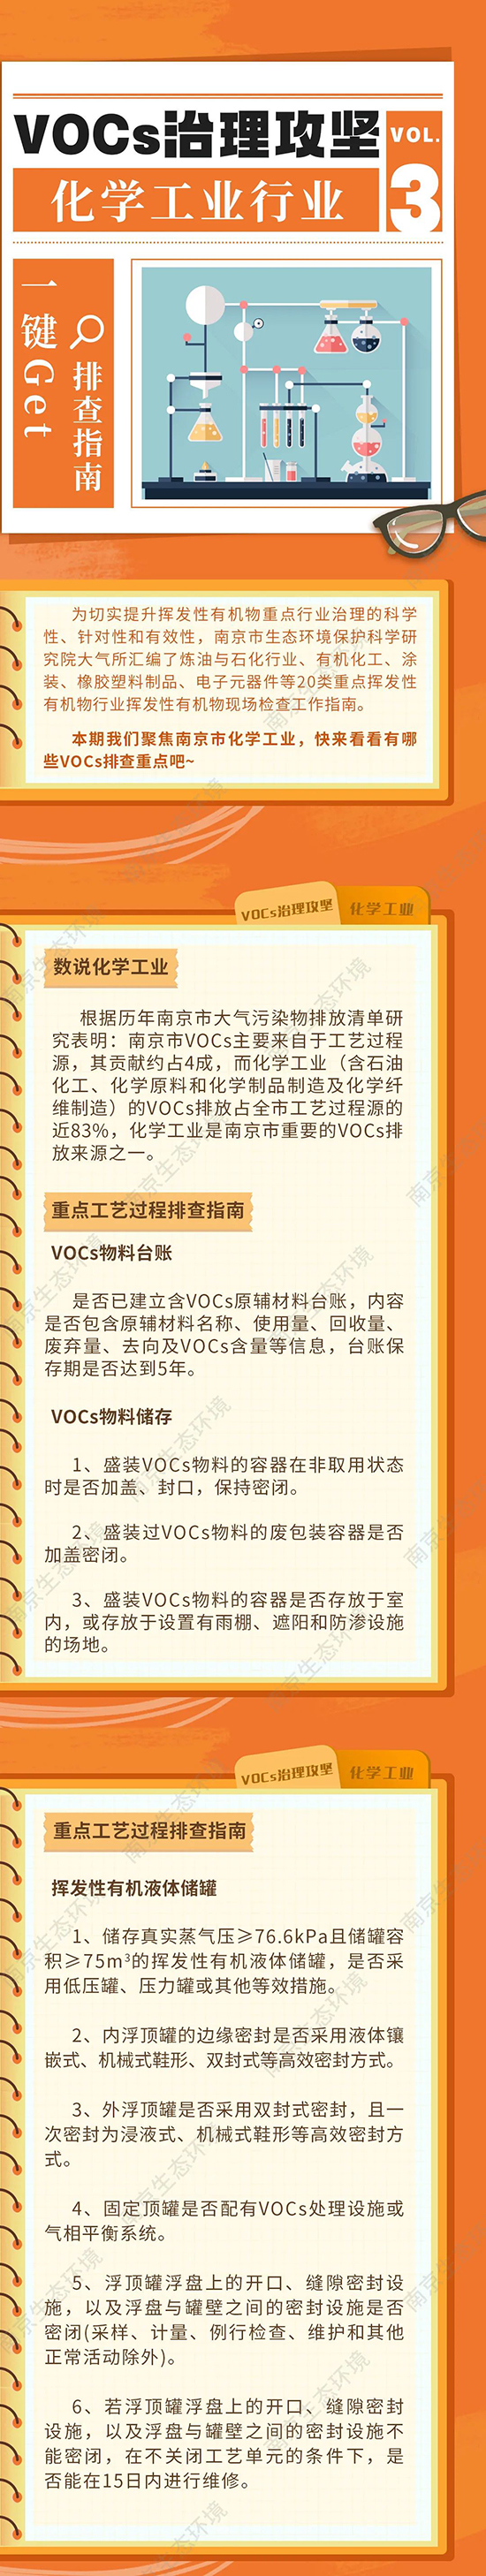 南京市VOC排查1.jpg